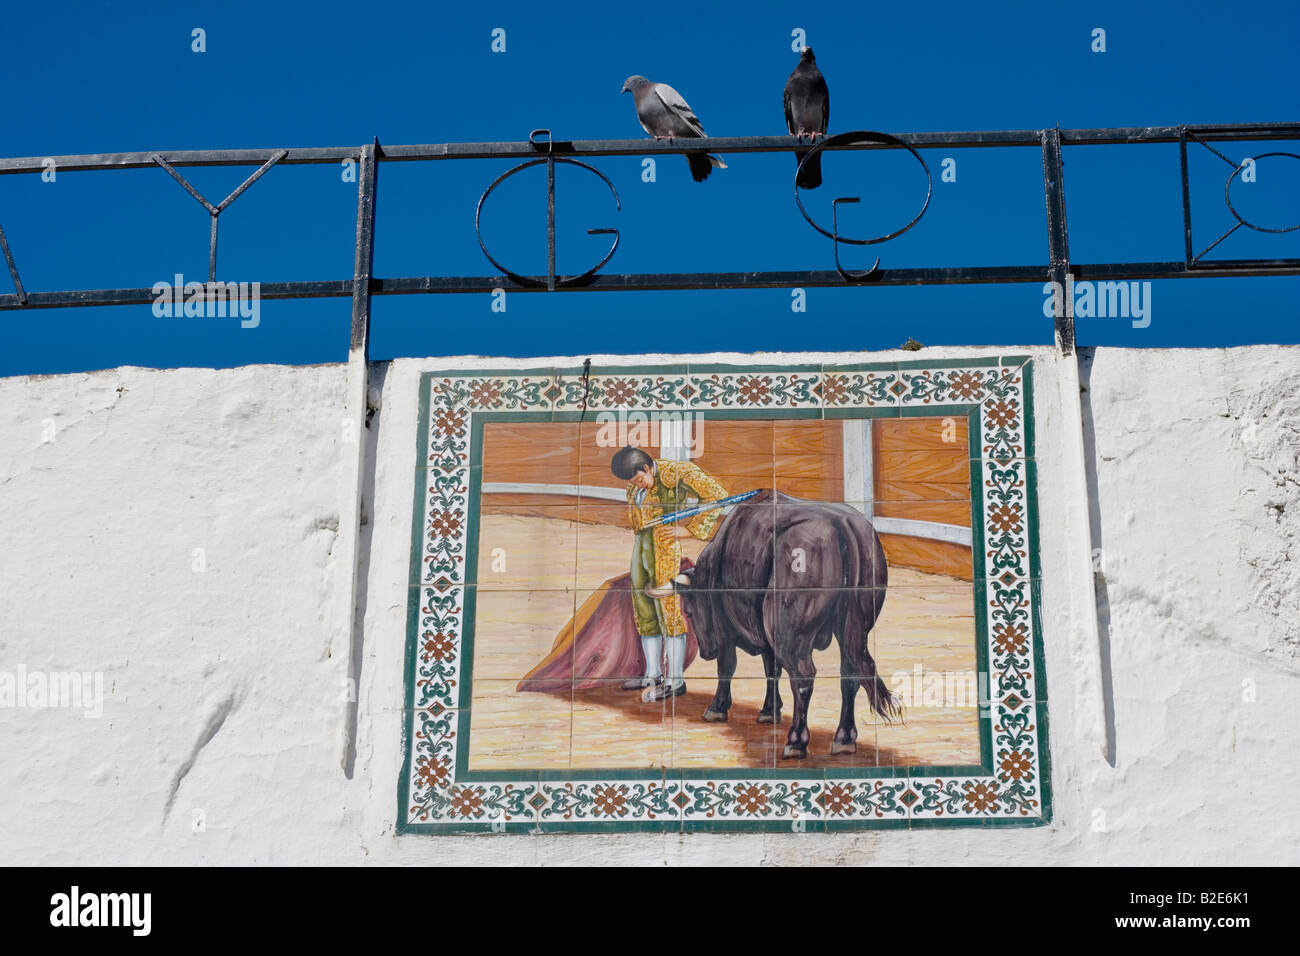 La province de Malaga Mijas Costa del Sol Espagne céramique peinture de torero et de bull à l'arène Banque D'Images